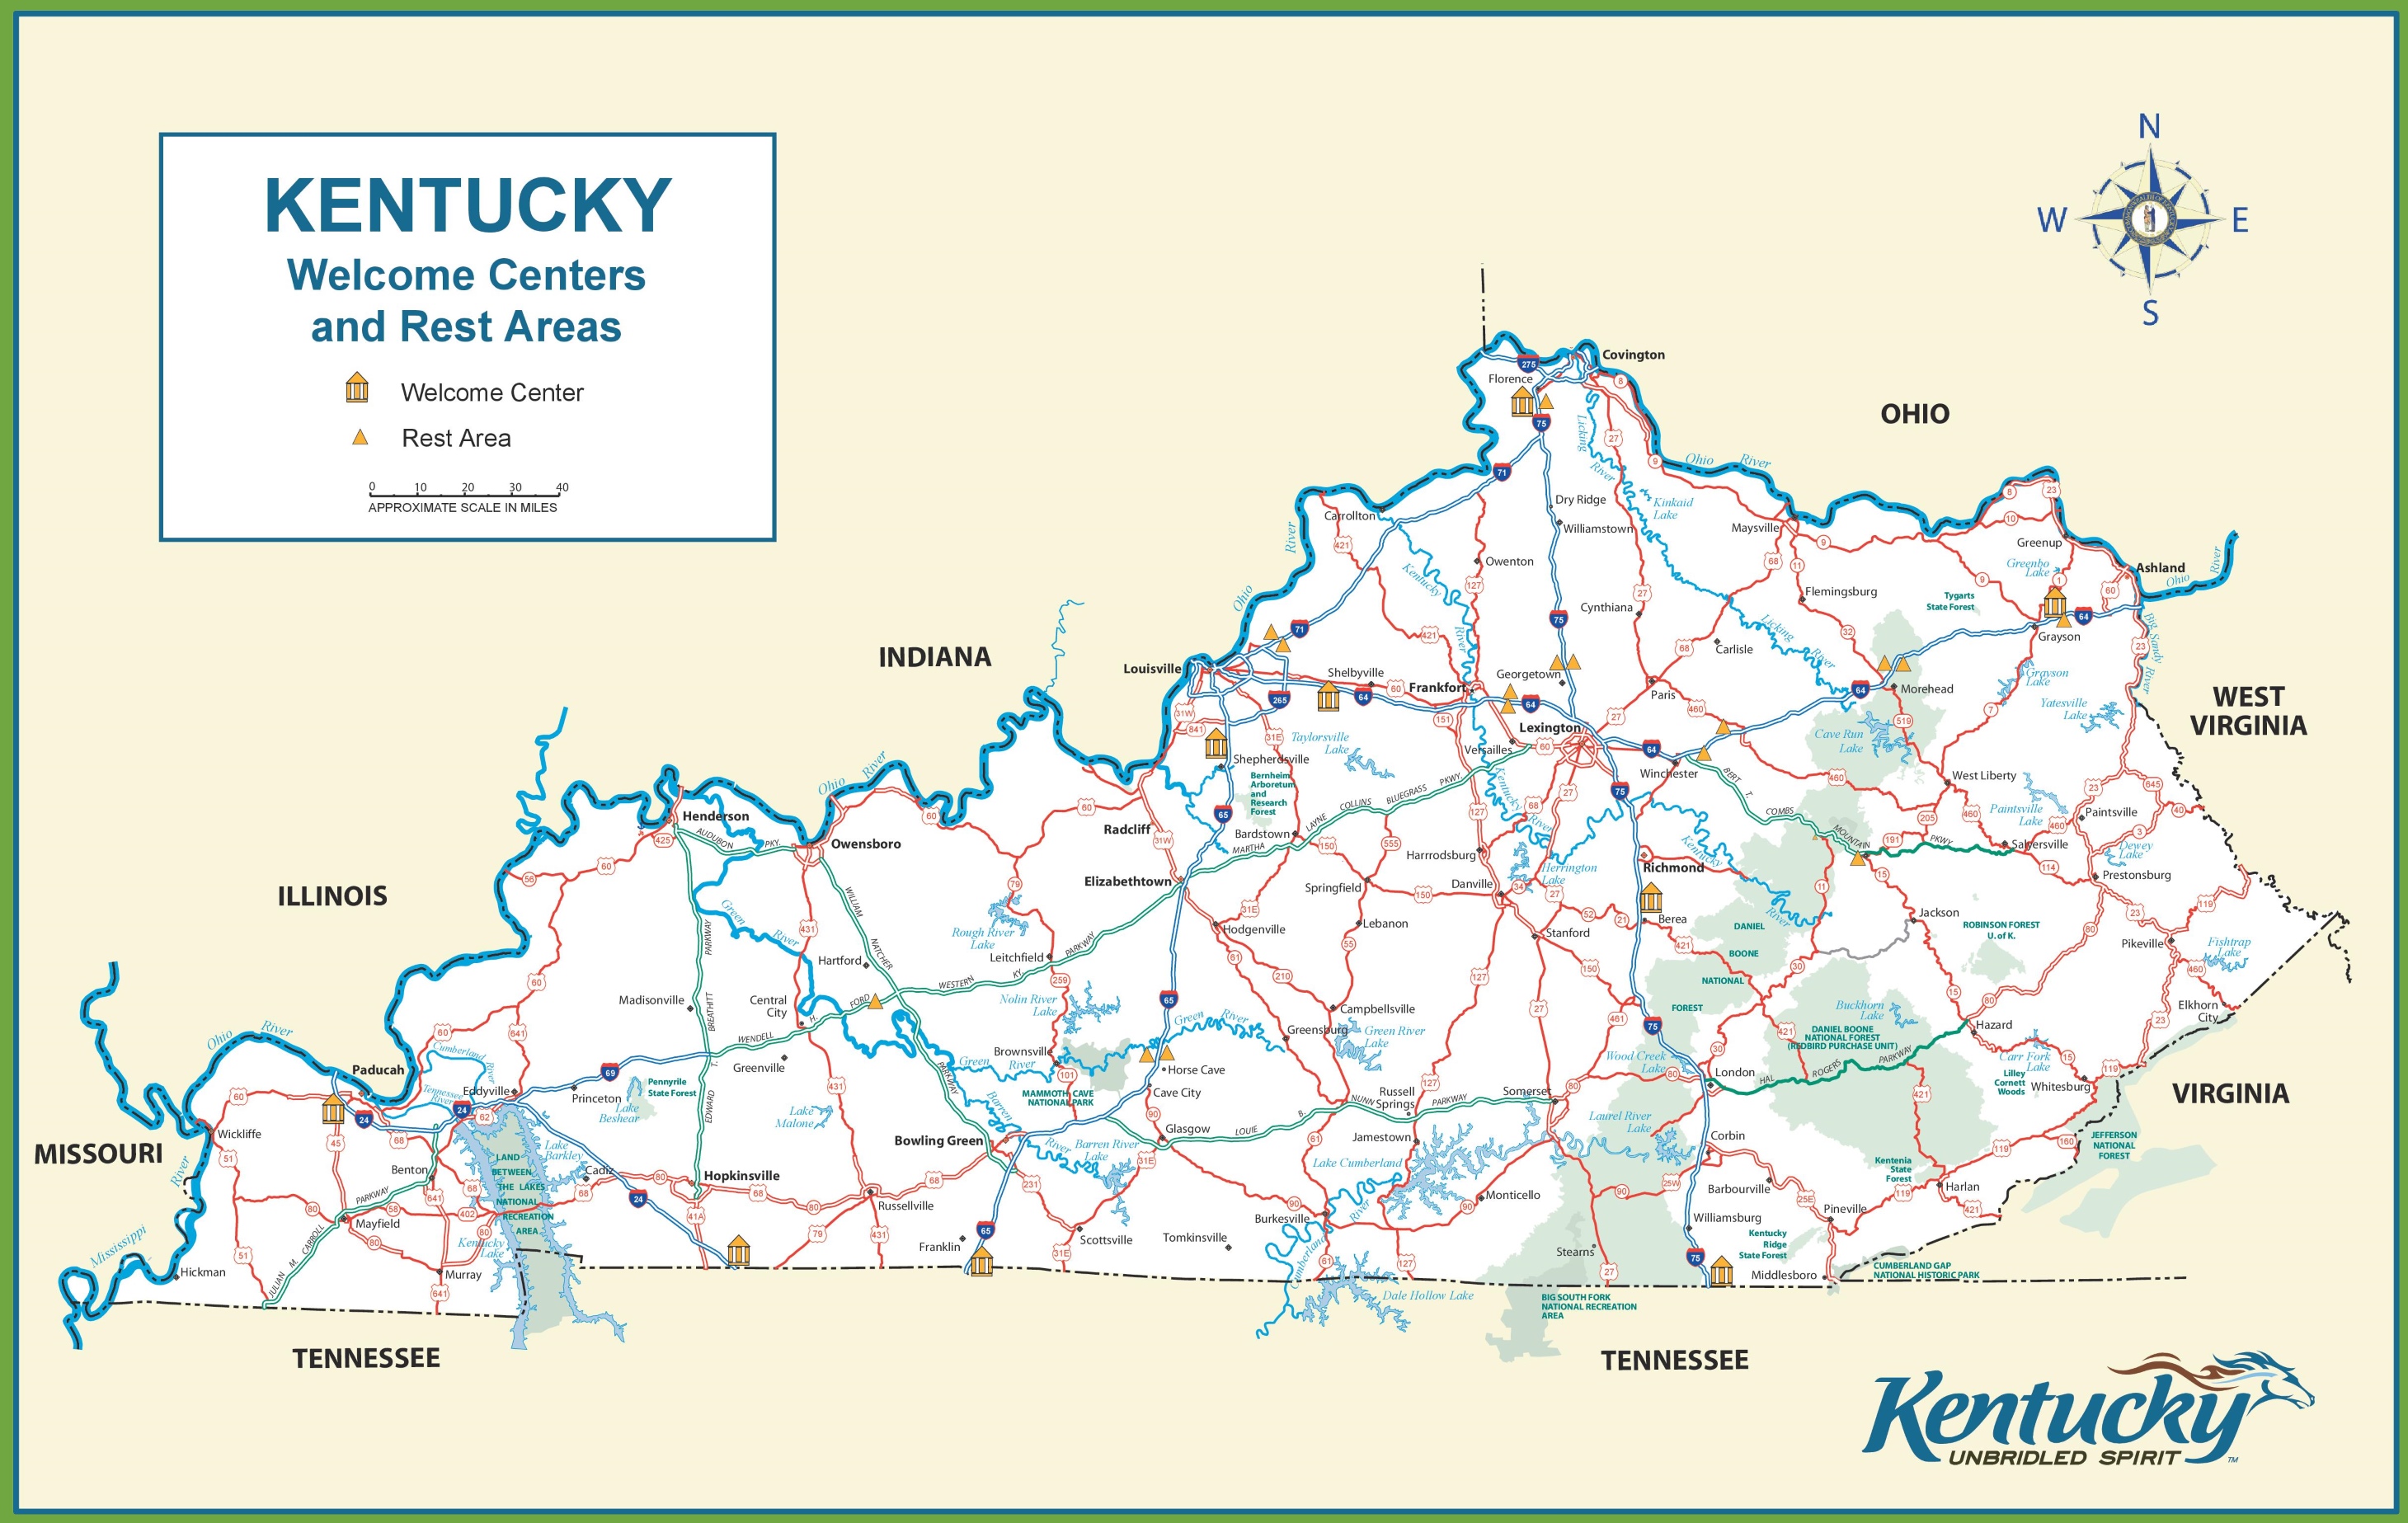 Kentucky World Map